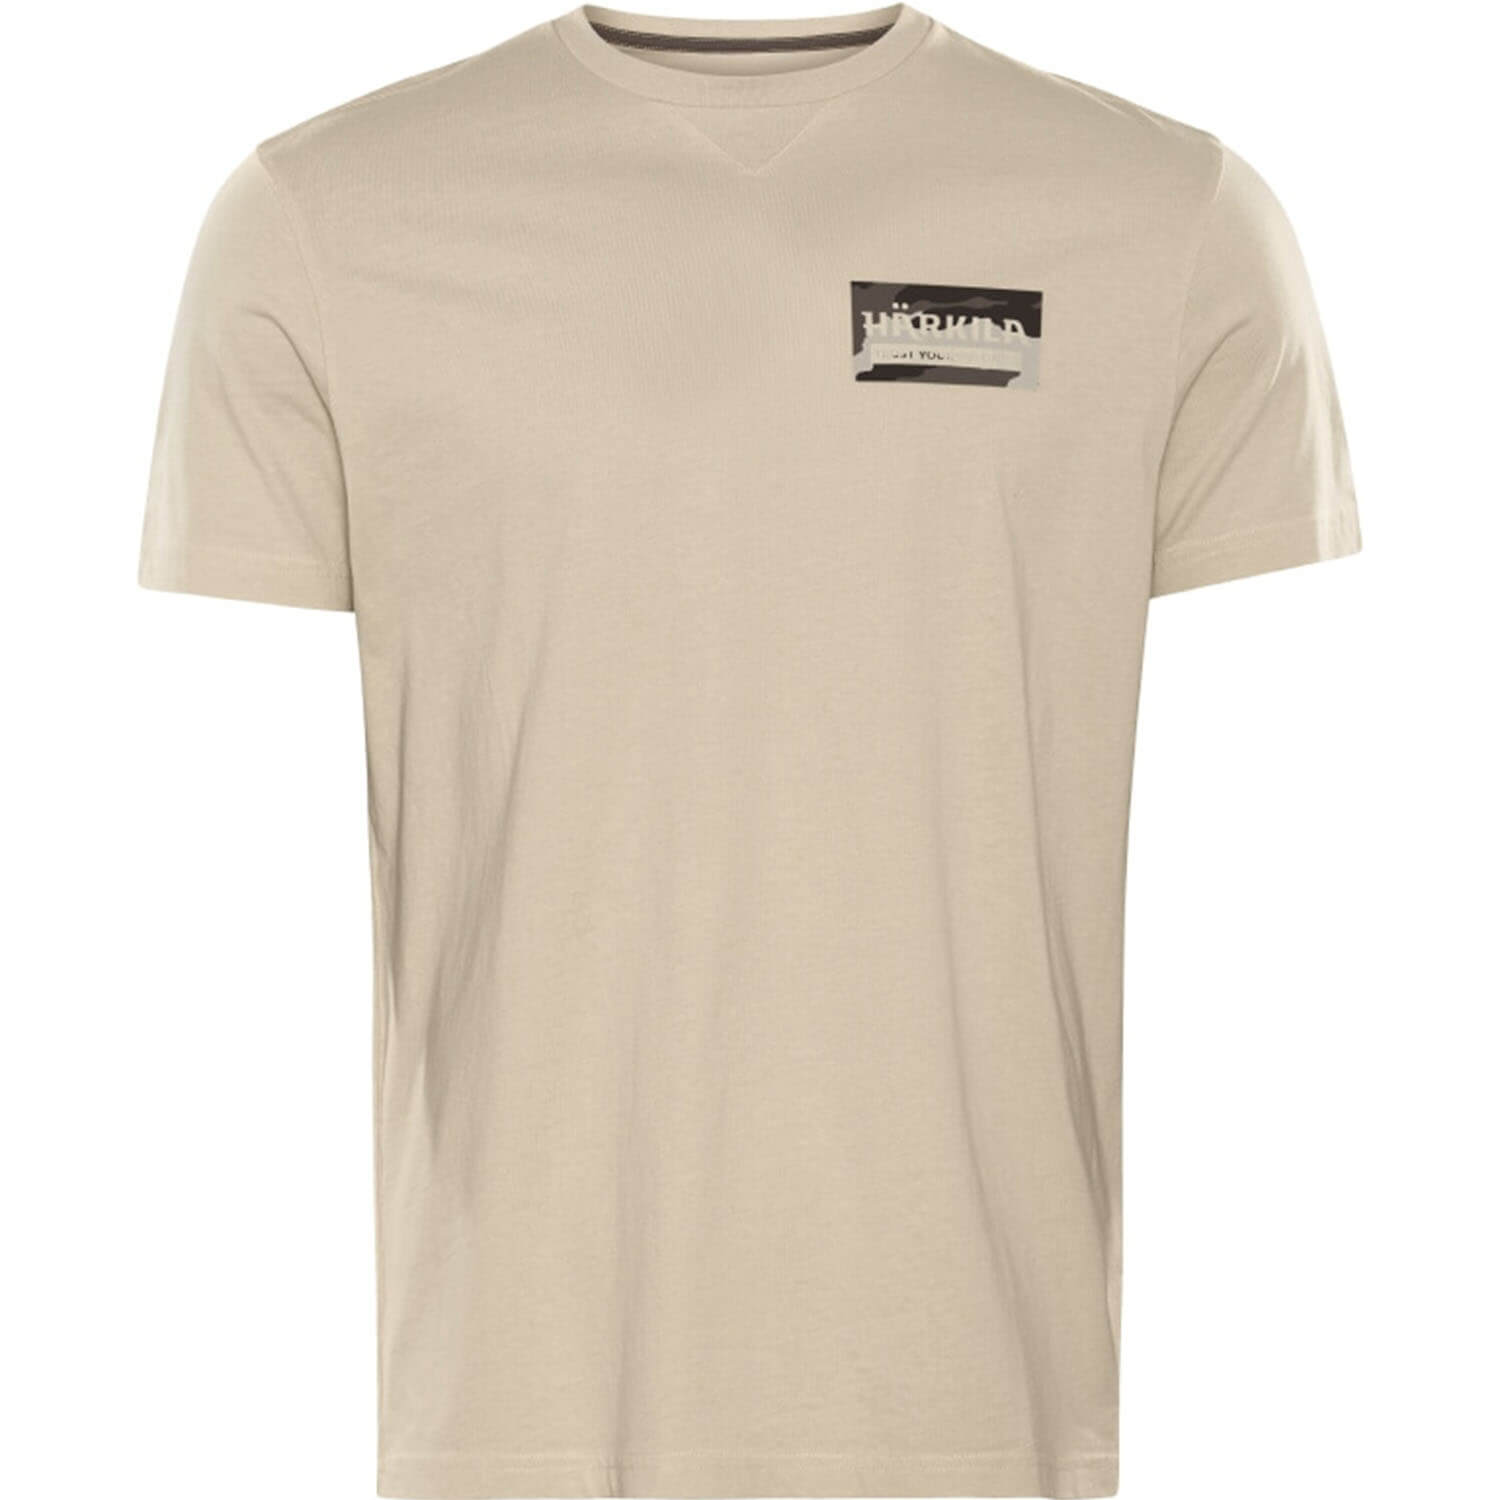  Härkila Core T-shirt (grijs) - Overhemden & shirts